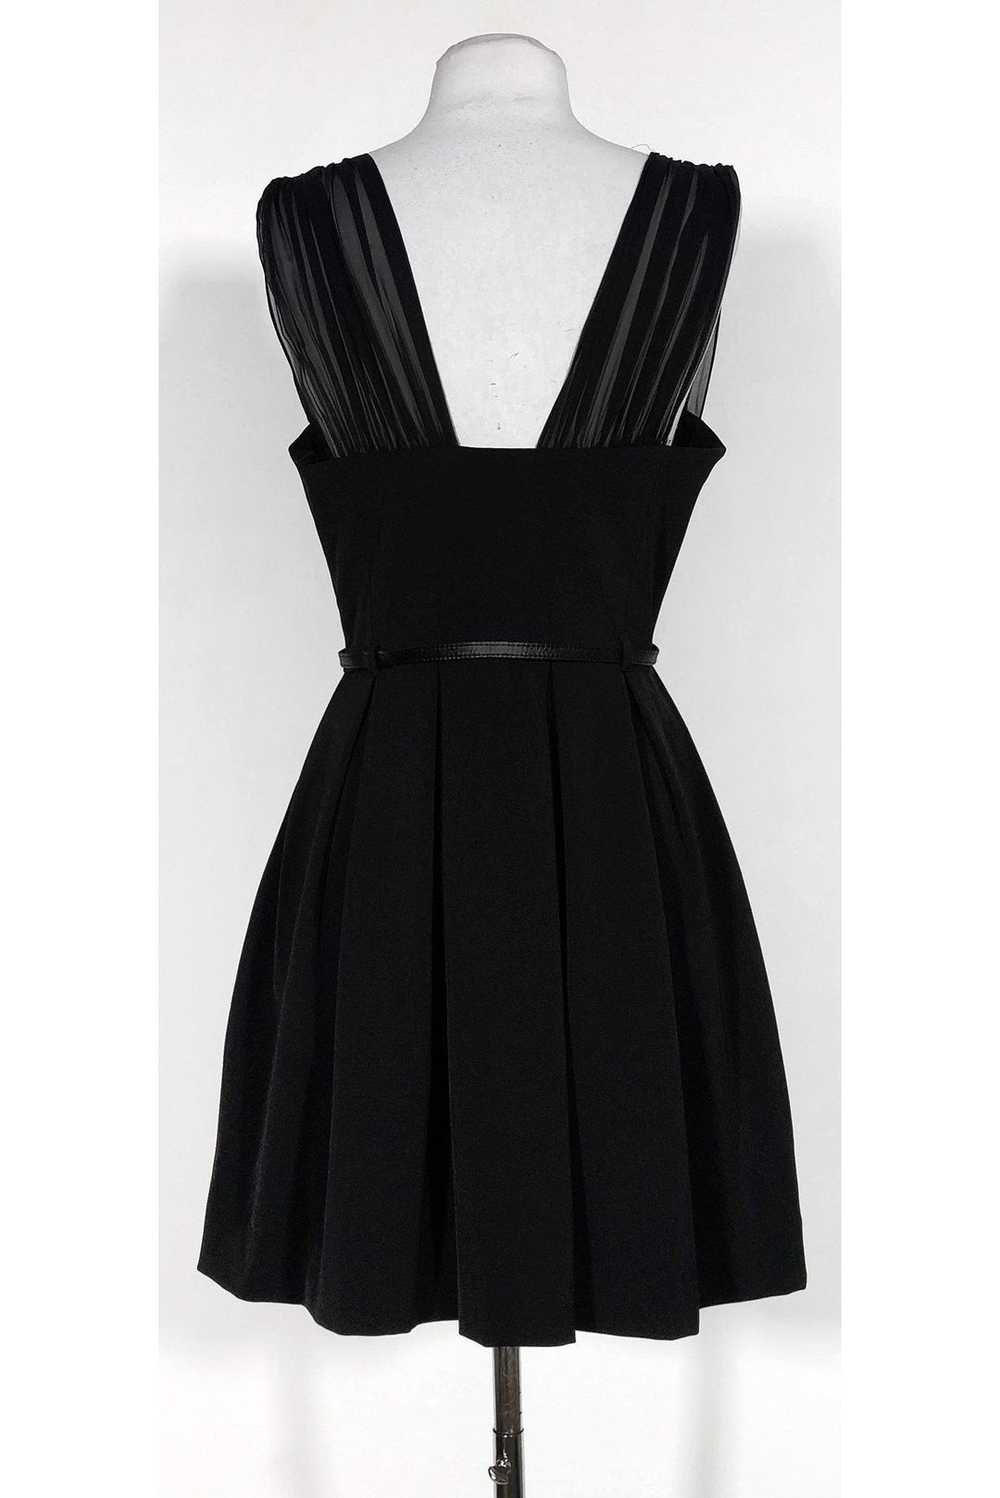 Black Halo - Black Pleated Dress Sz 6 - image 3